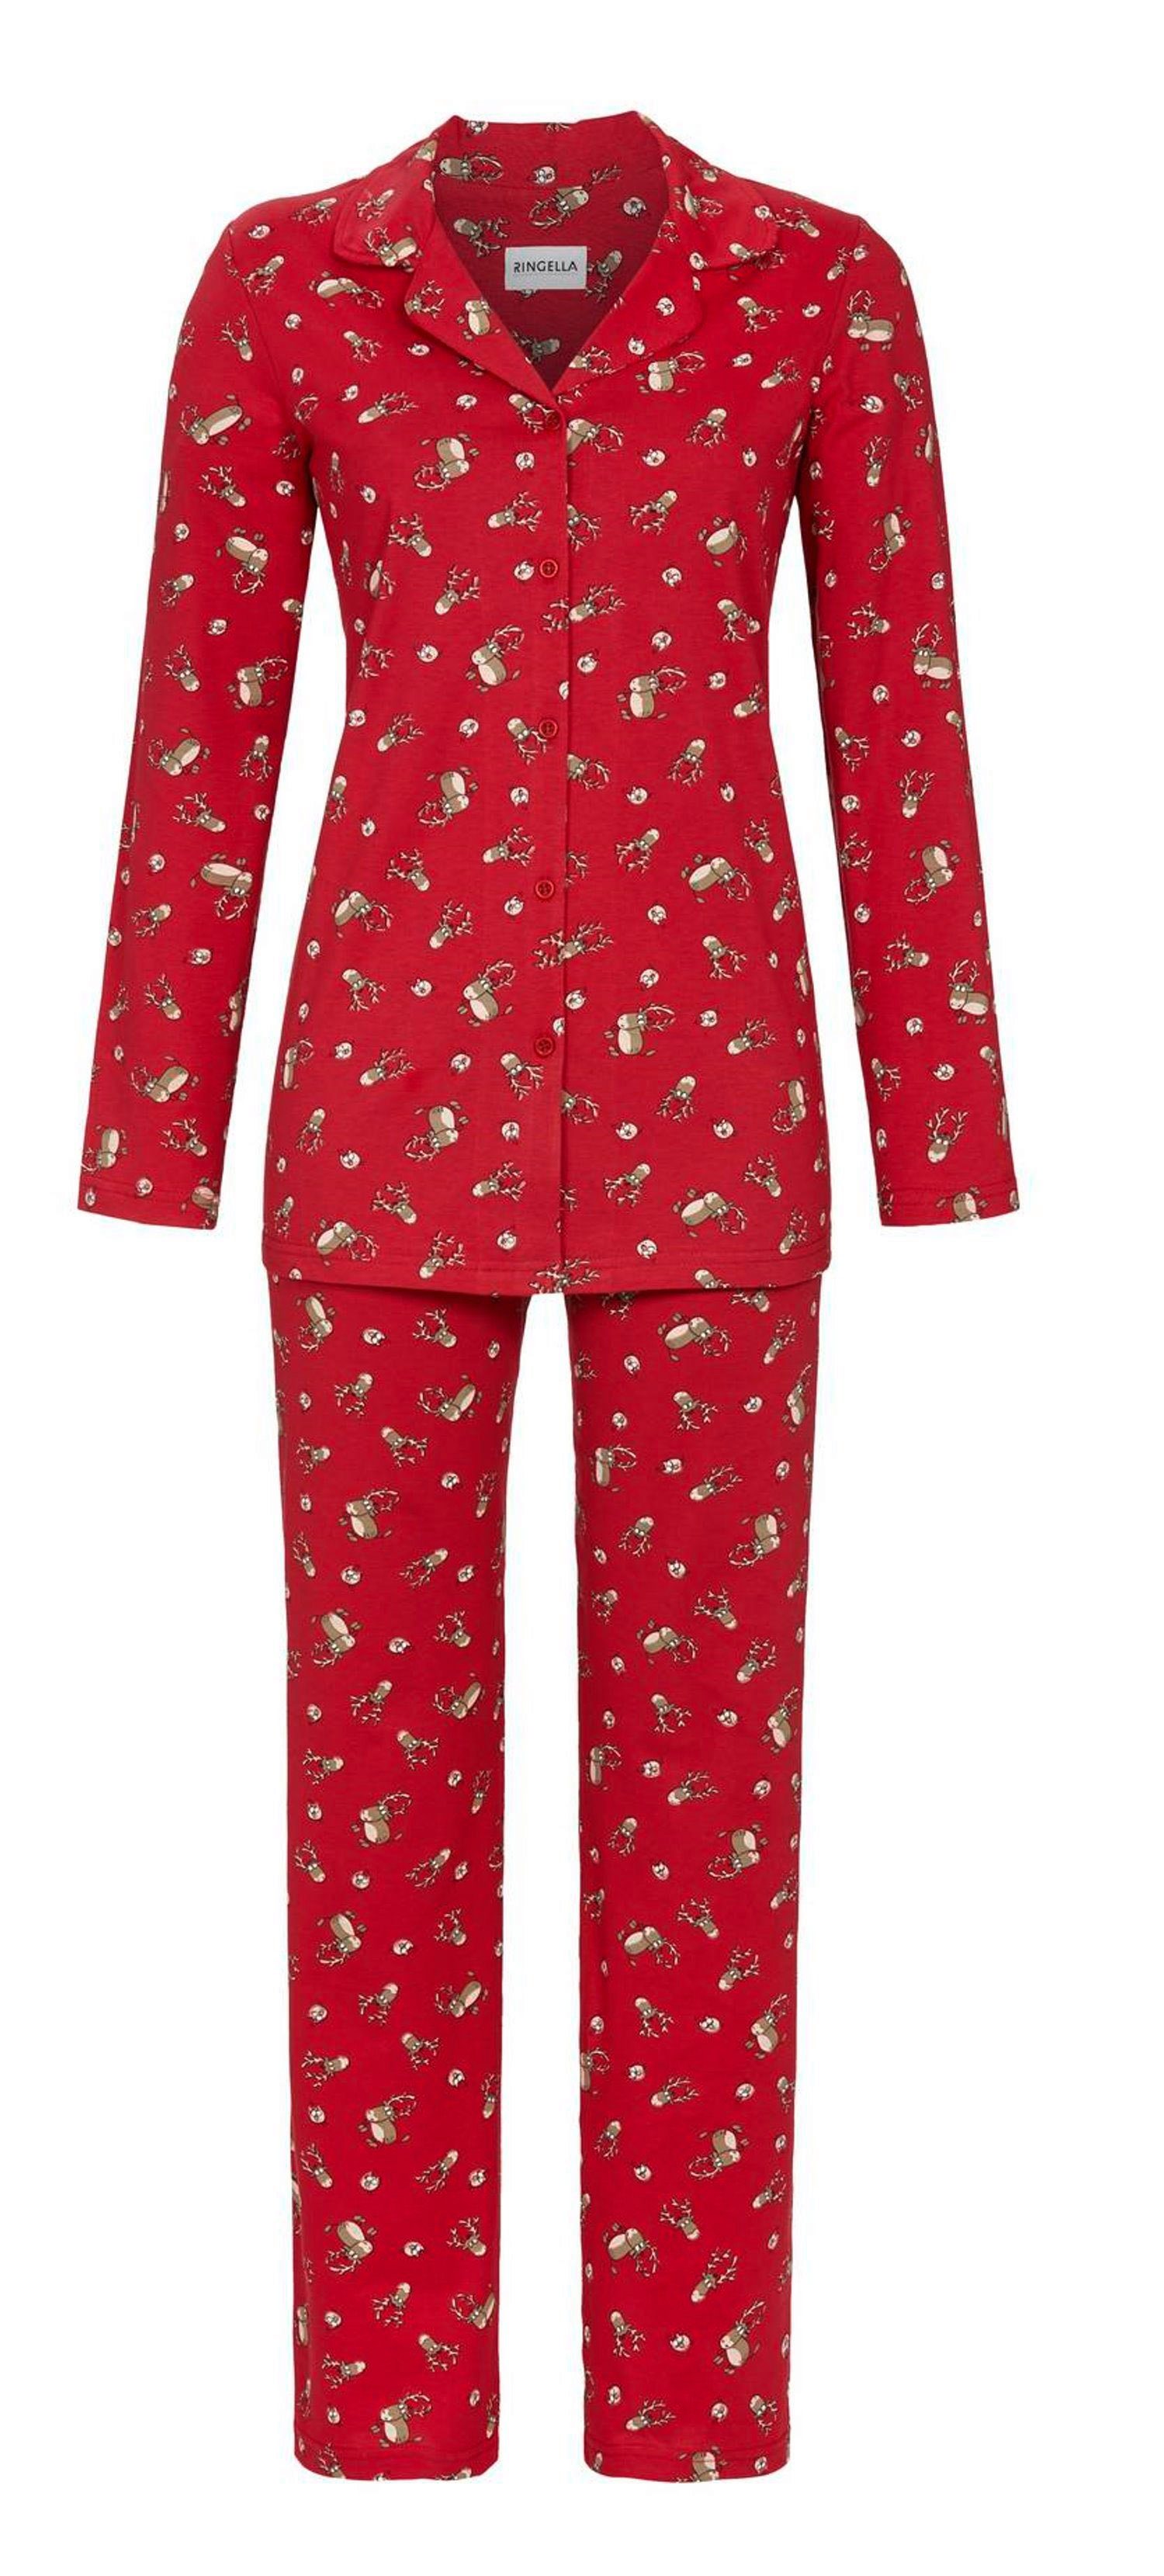 Ringella Pyjama Ringella Damen Pyjama mit Elchen (Schlafanzug, 2 tlg) Auch in großen Größen Baumwolle rot | Pyjama-Sets